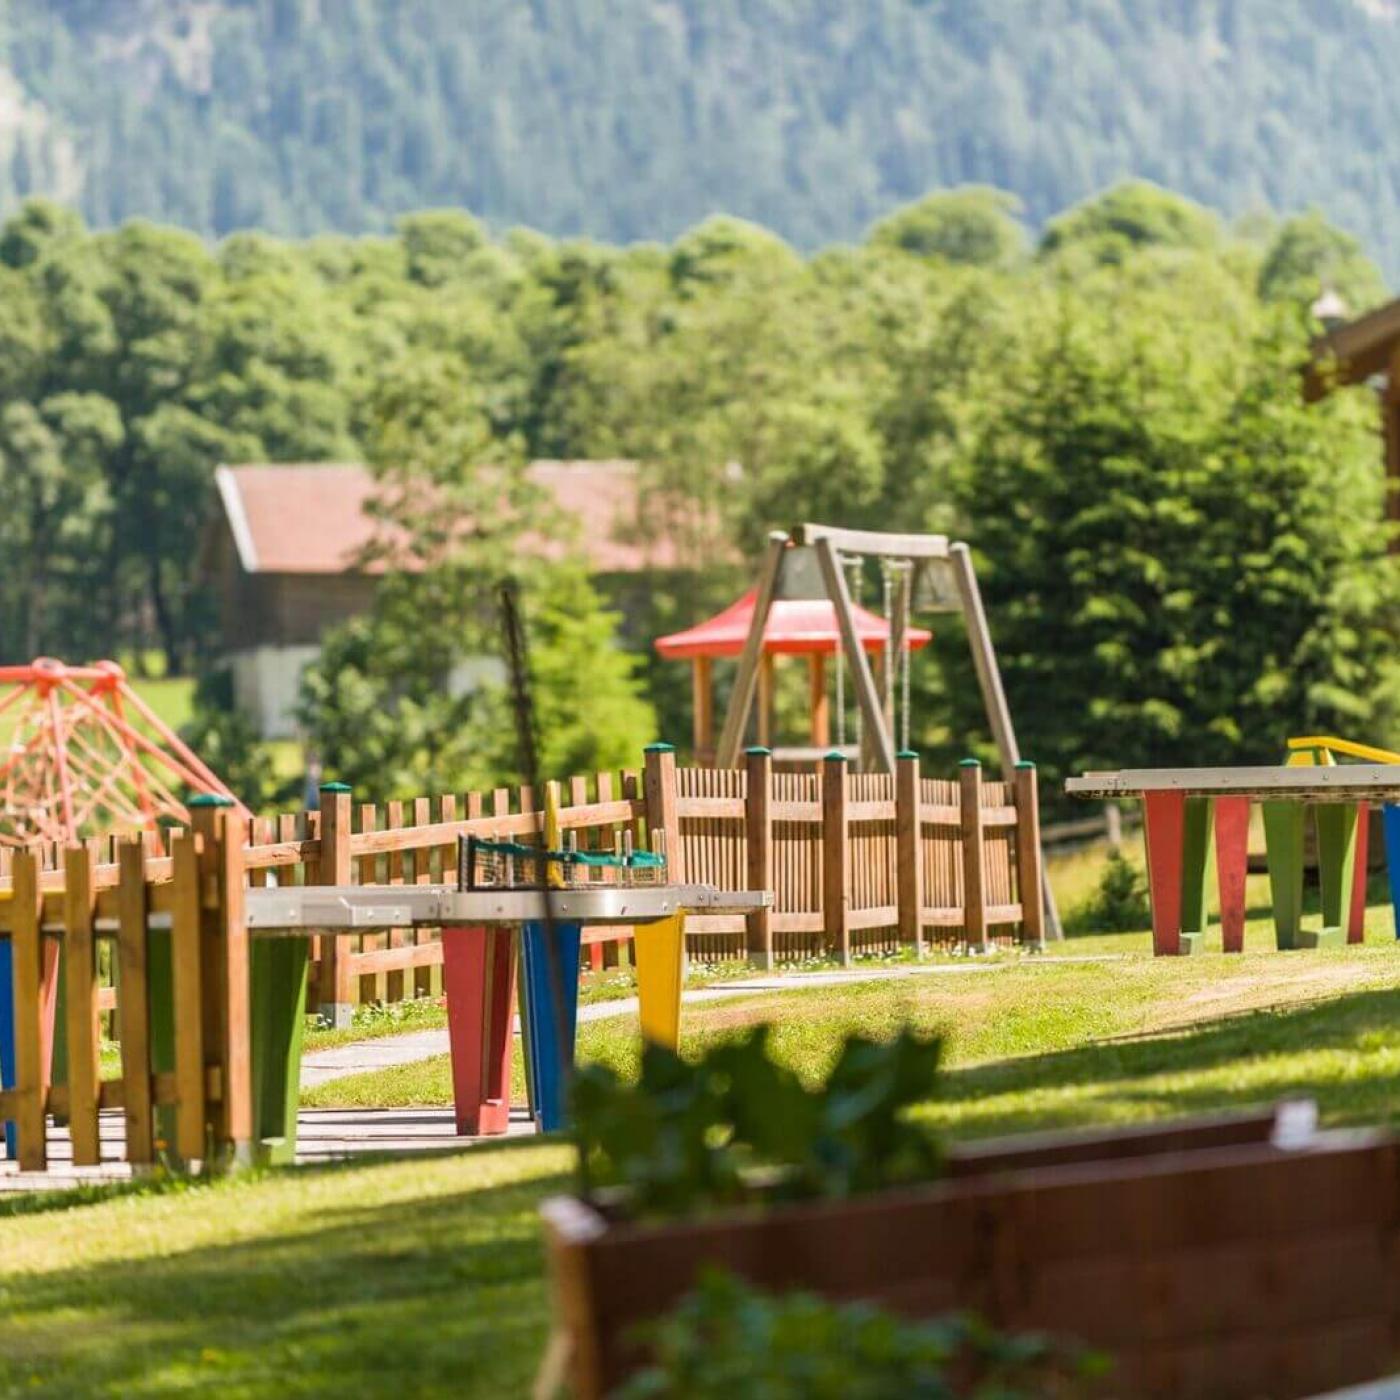 Ein riesiger Spielplatz sorgt für Spaß und Action bei den Kindern im Garten vom Gasthof Wieseneck.